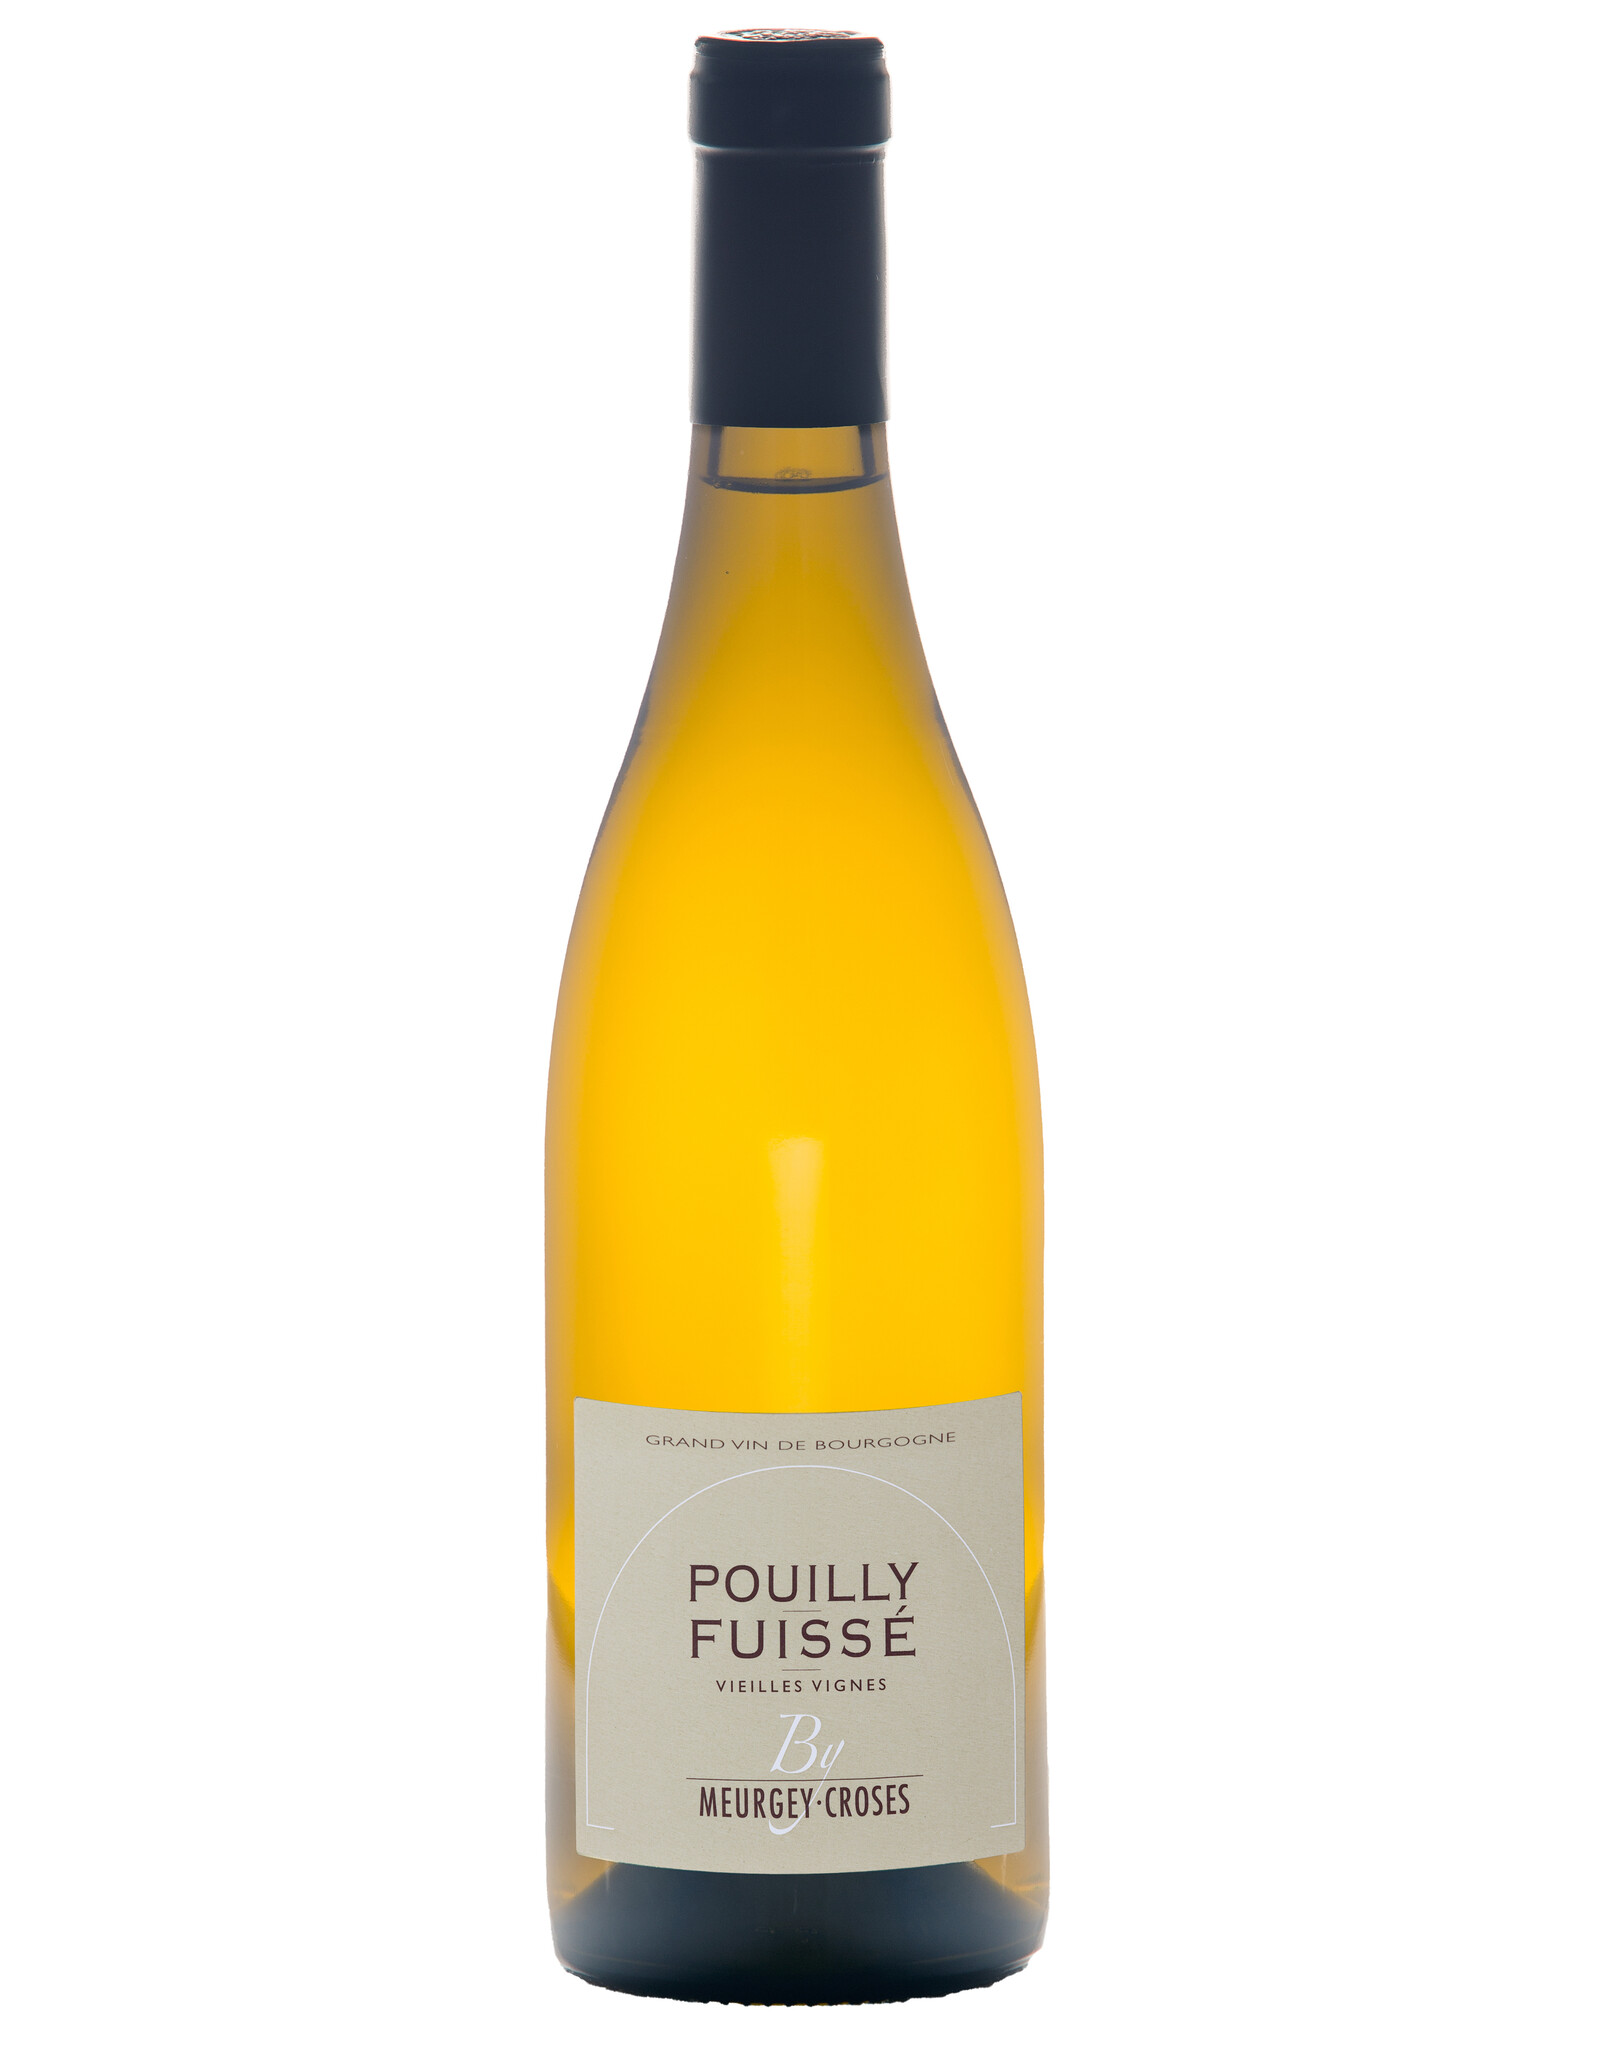 Meurgey-Croses Pouilly Fuisse Vieilles Vignes 2019